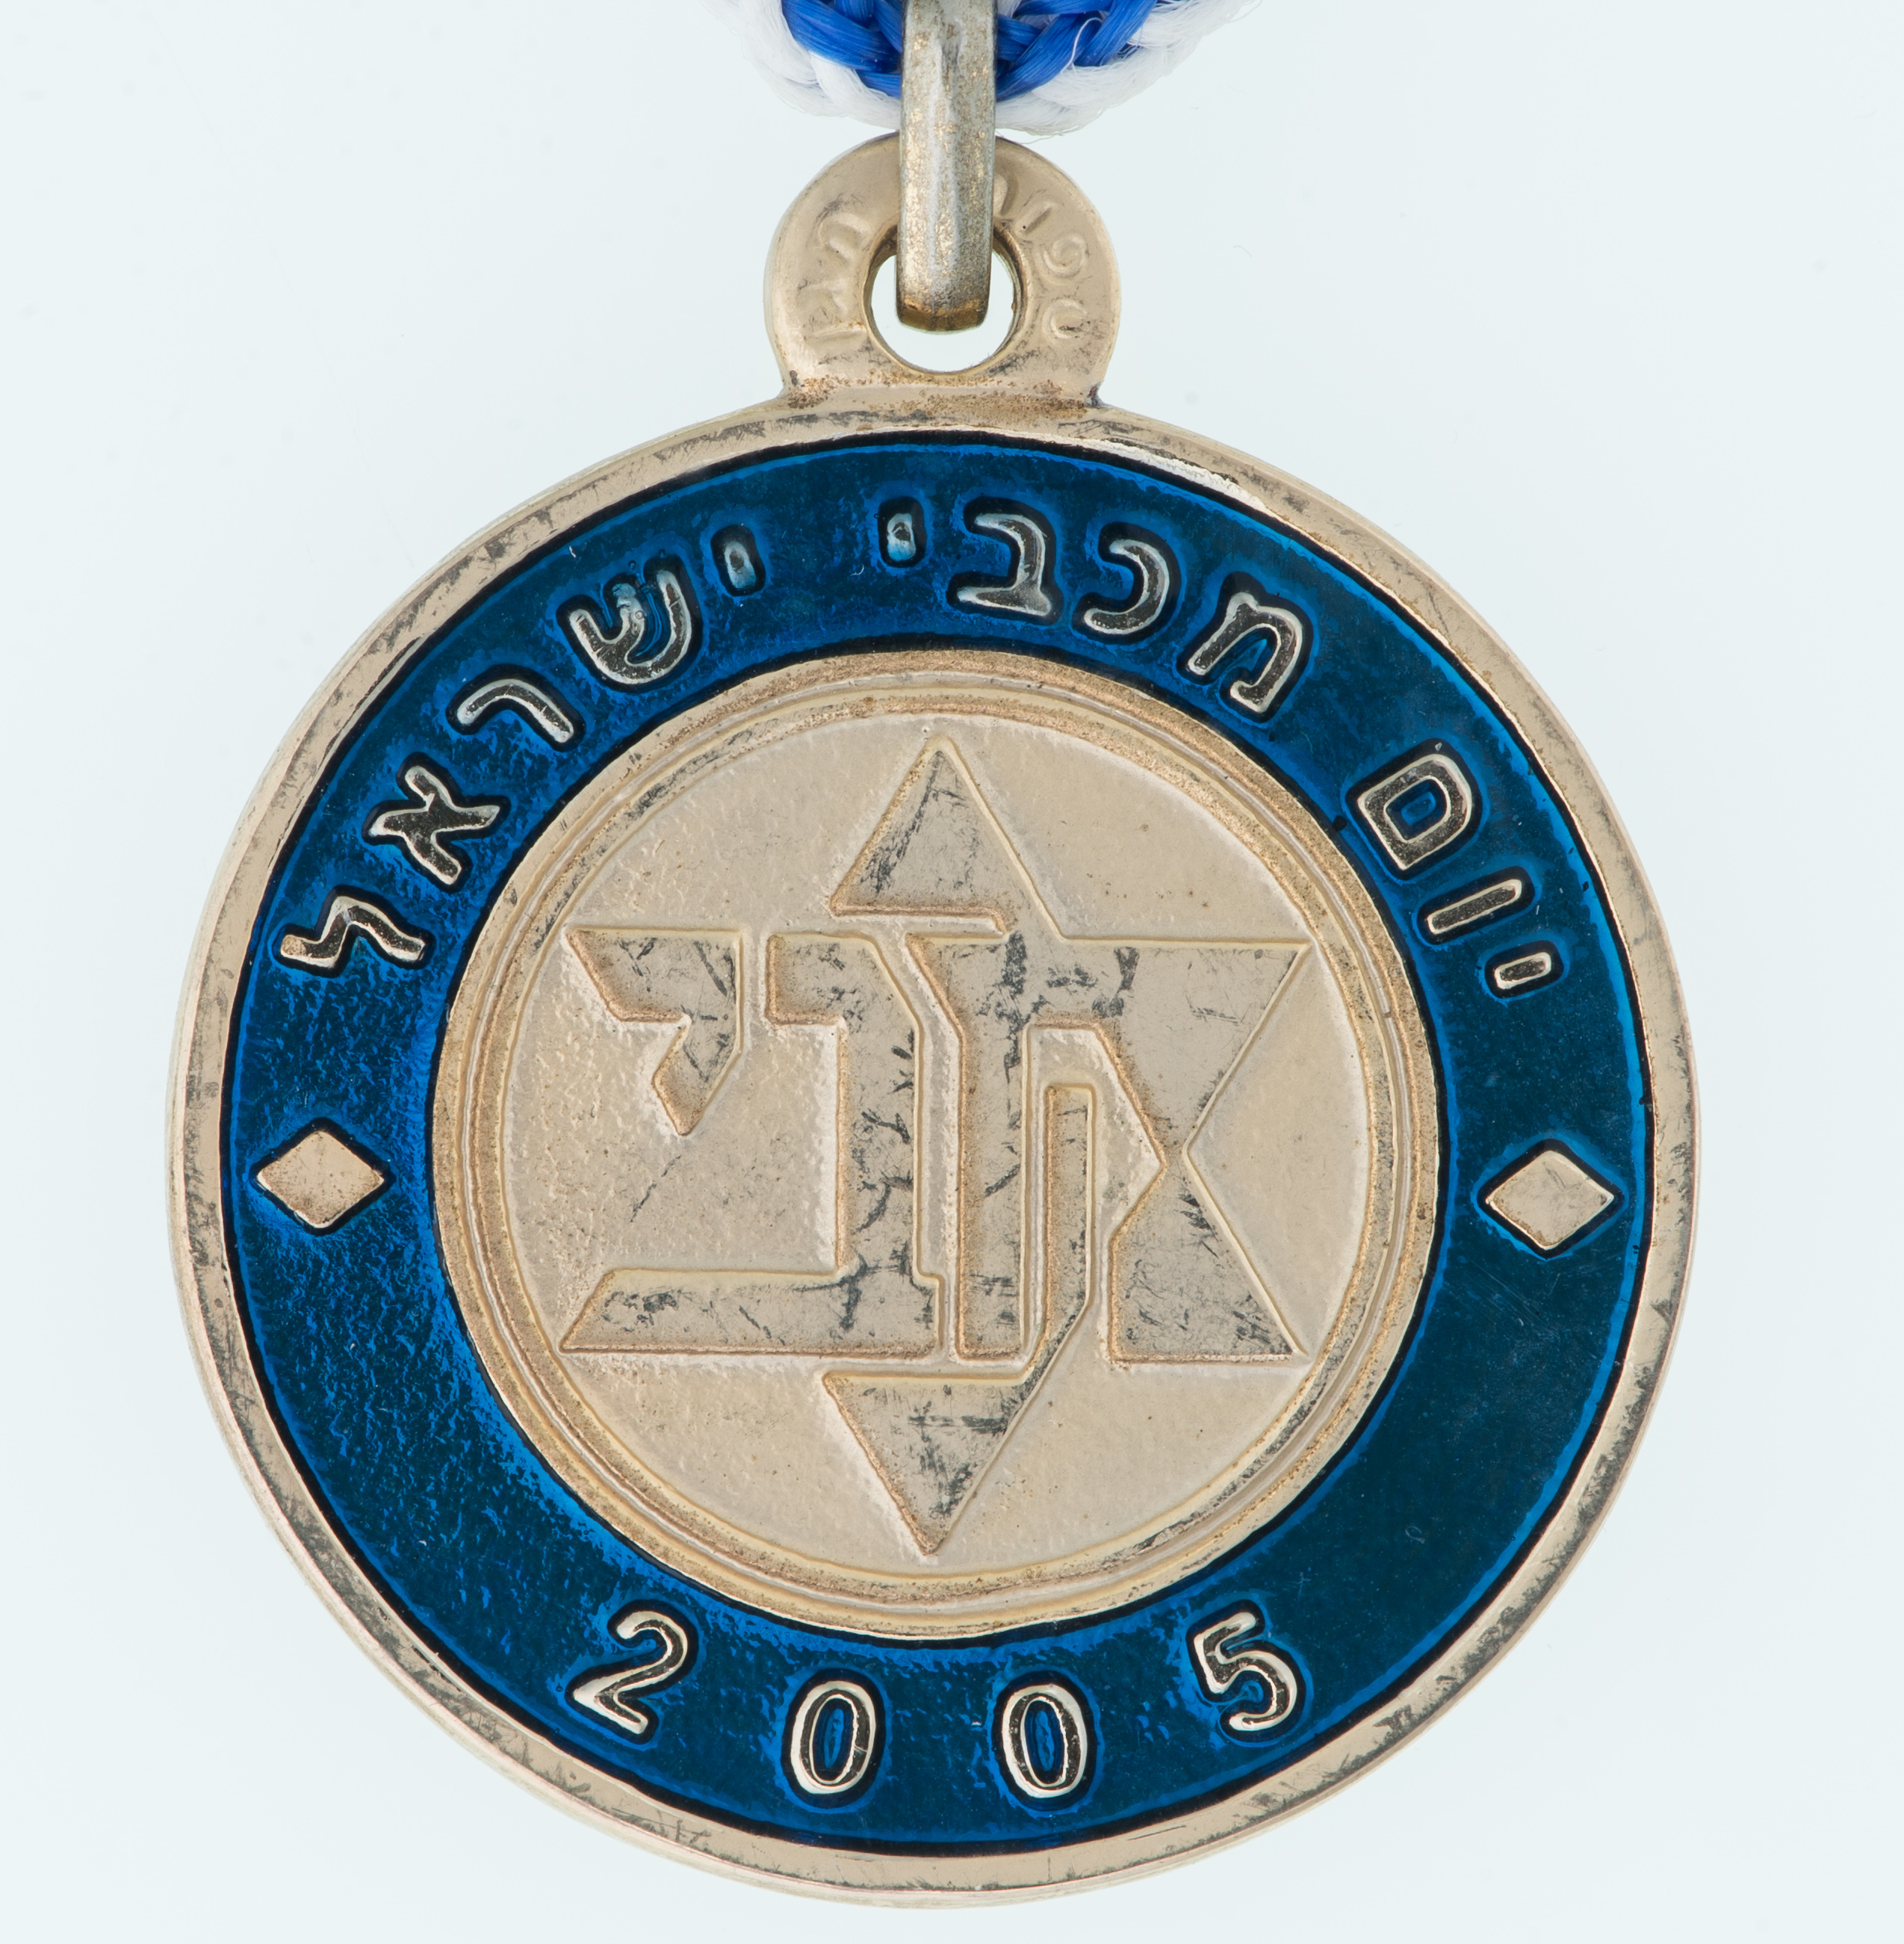 Medals\M-386-1A.jpg - הגדלת תמונה עם לייטבוקס